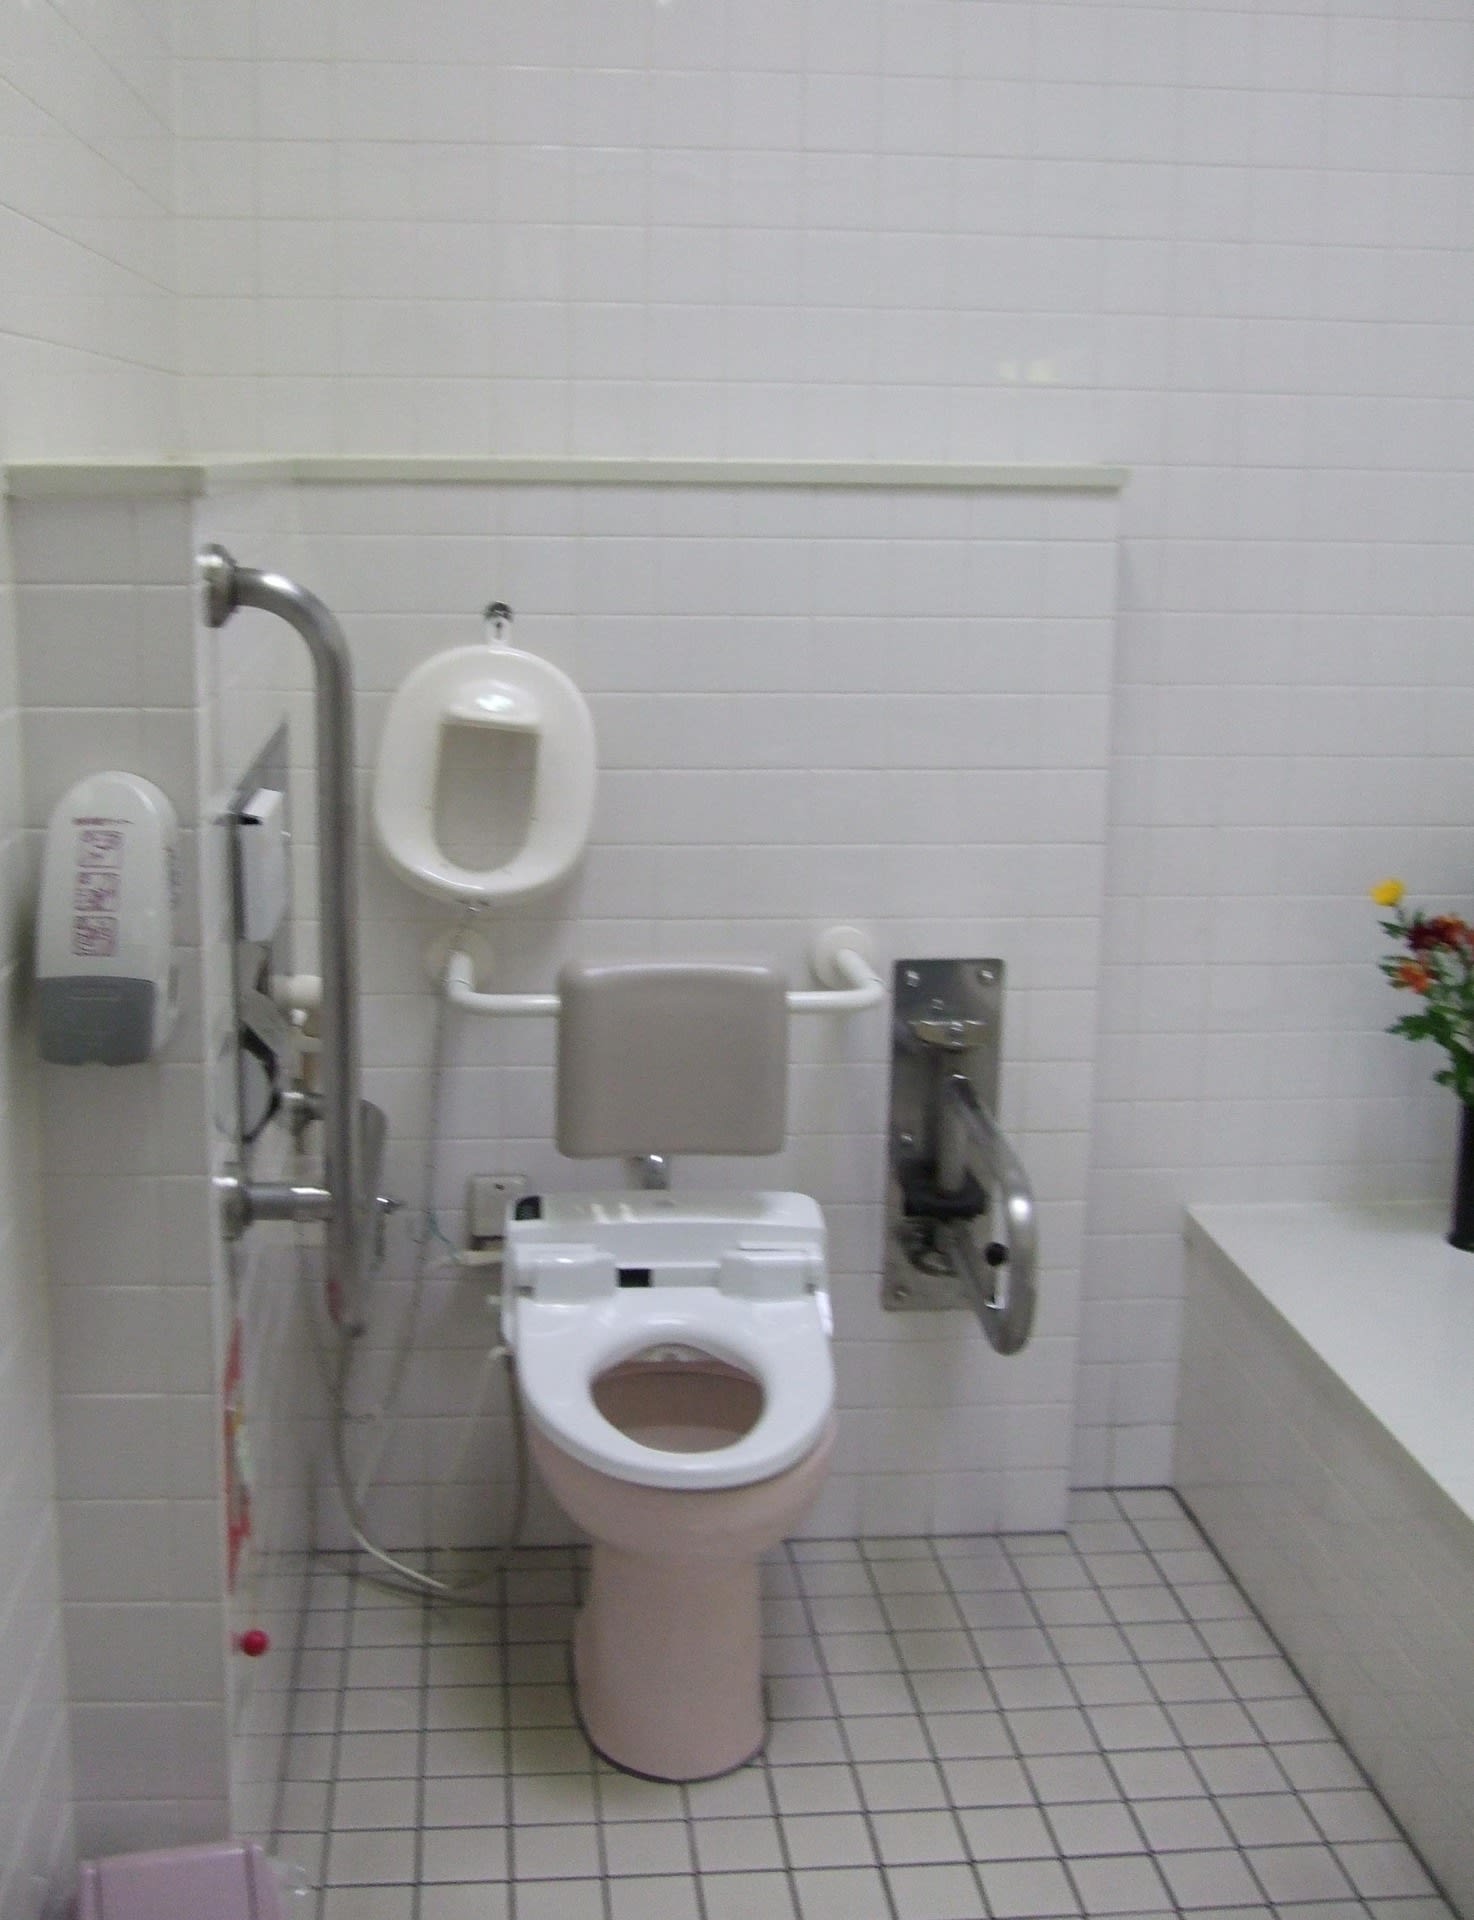 長野道下り 姨捨SA 障害者用トイレ 障害者用トイレの情報 ～ ユニバーサルトイレ・多目的トイレ・車椅子トイレ